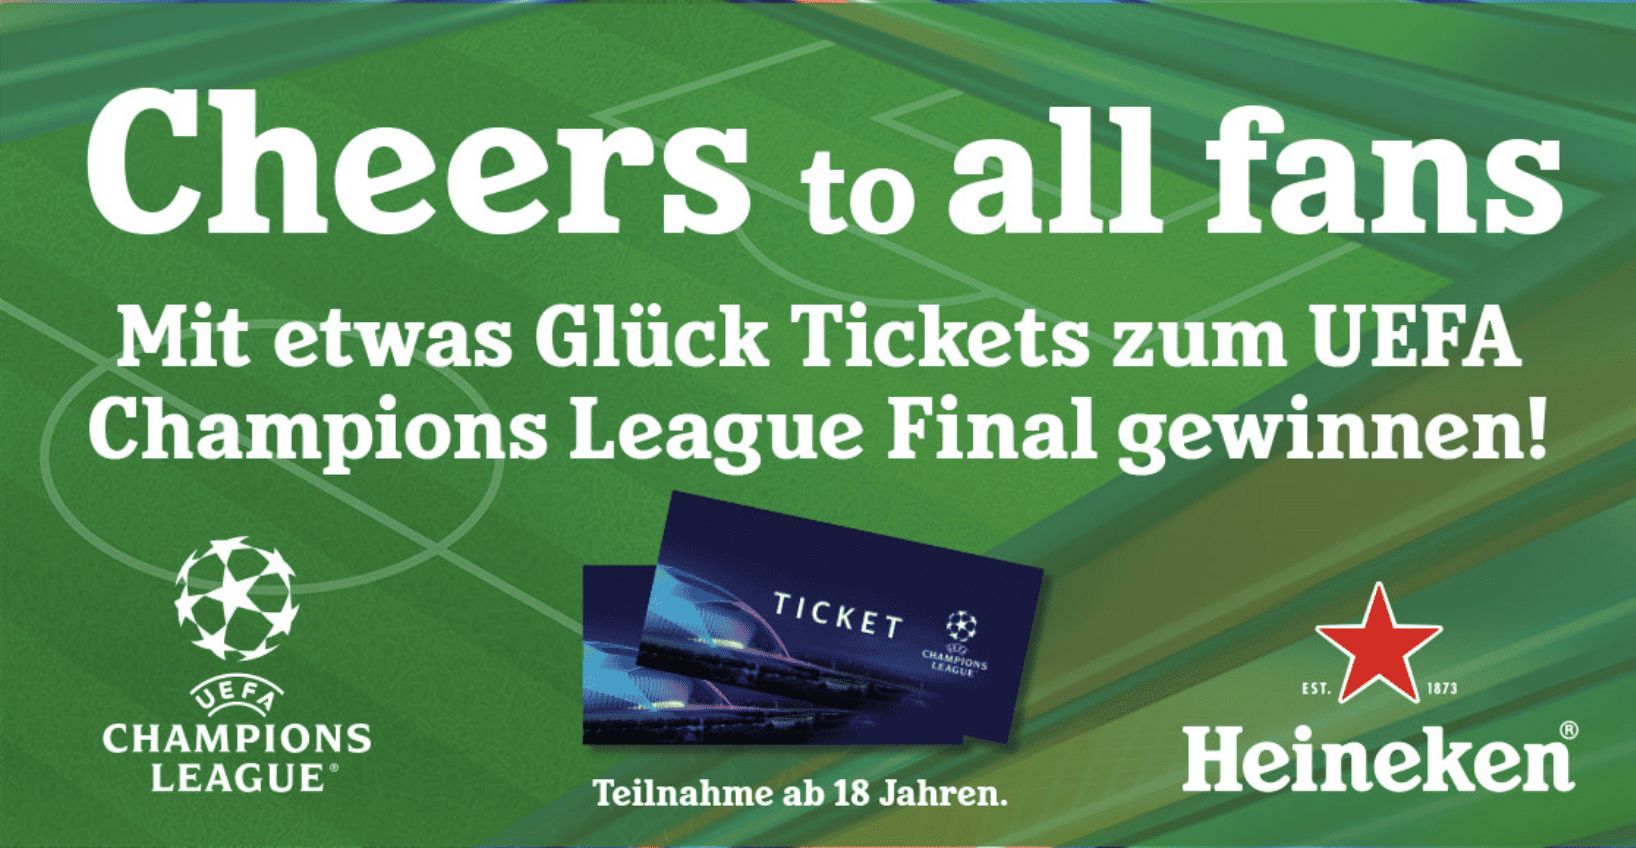 case_Heineken - Tickets für UEFA-Champions-League-Finale gewinnen